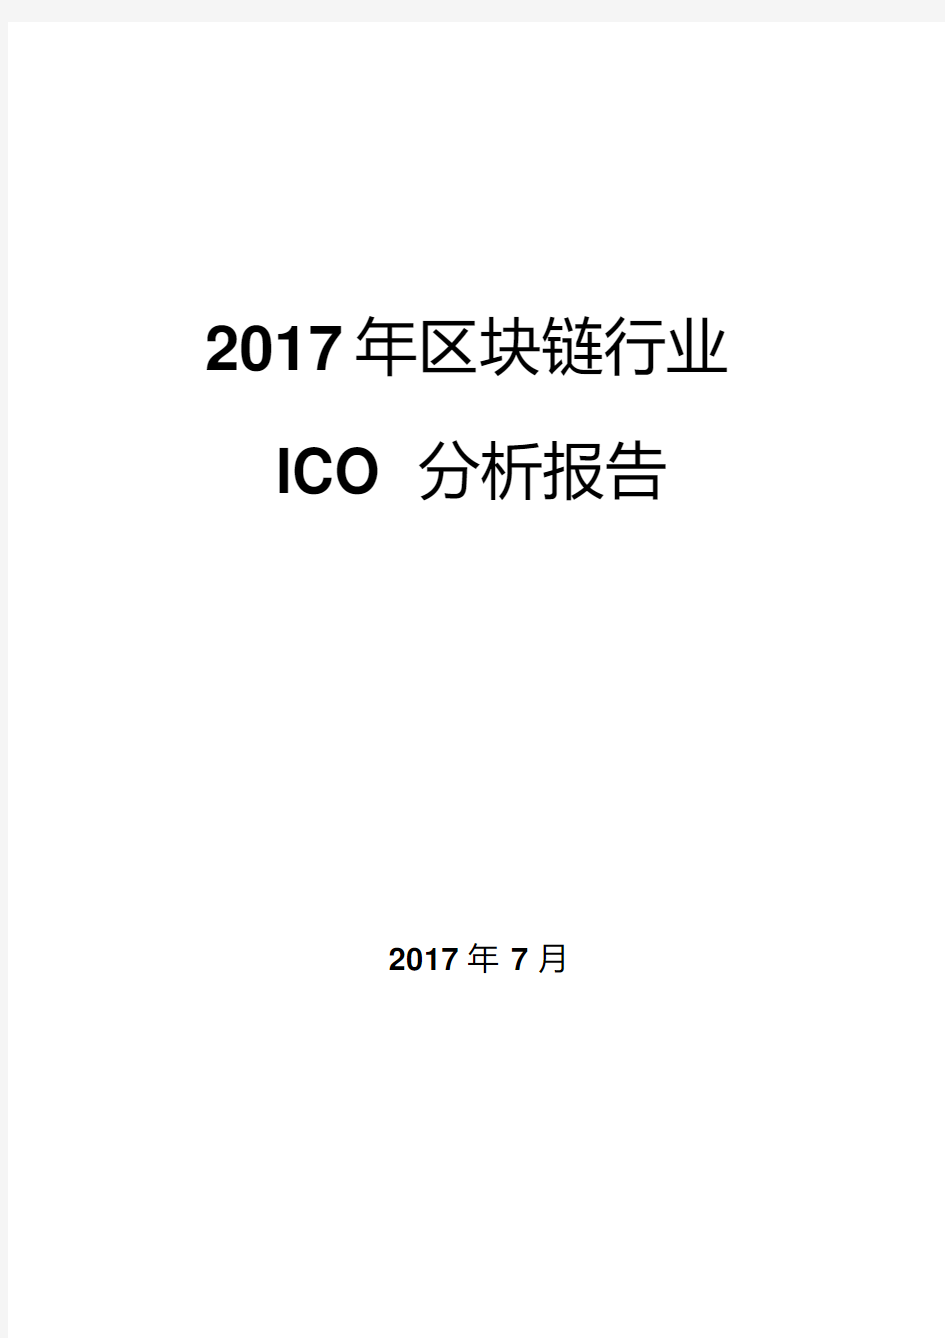 2017年区块链行业ICO分析报告